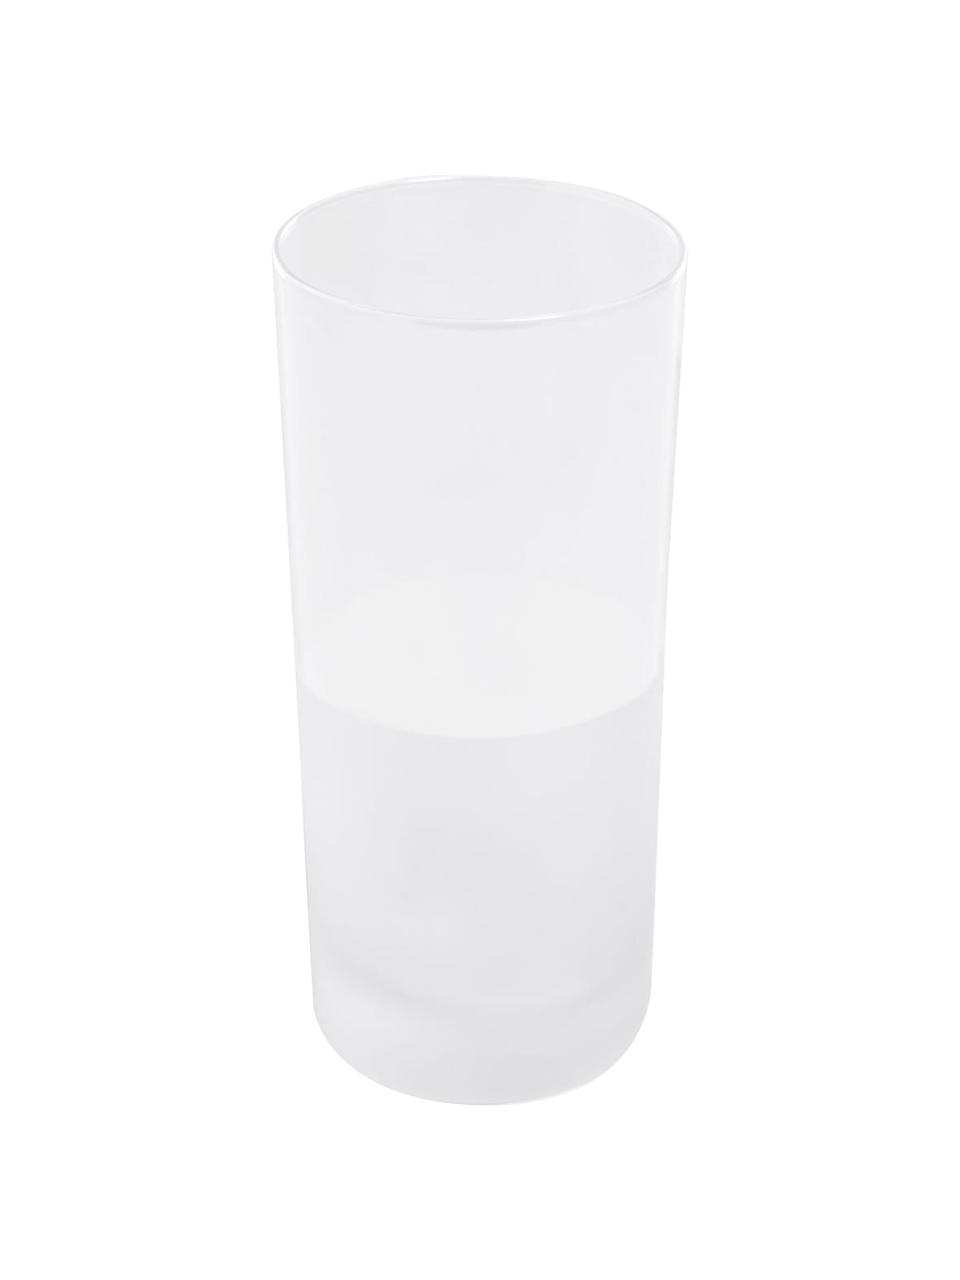 Semi-transparente Wassergläser Lilli, 4 Stück, Borosilikatglas, Semi-Transparent, Ø 7 x H 16 cm, 400 ml